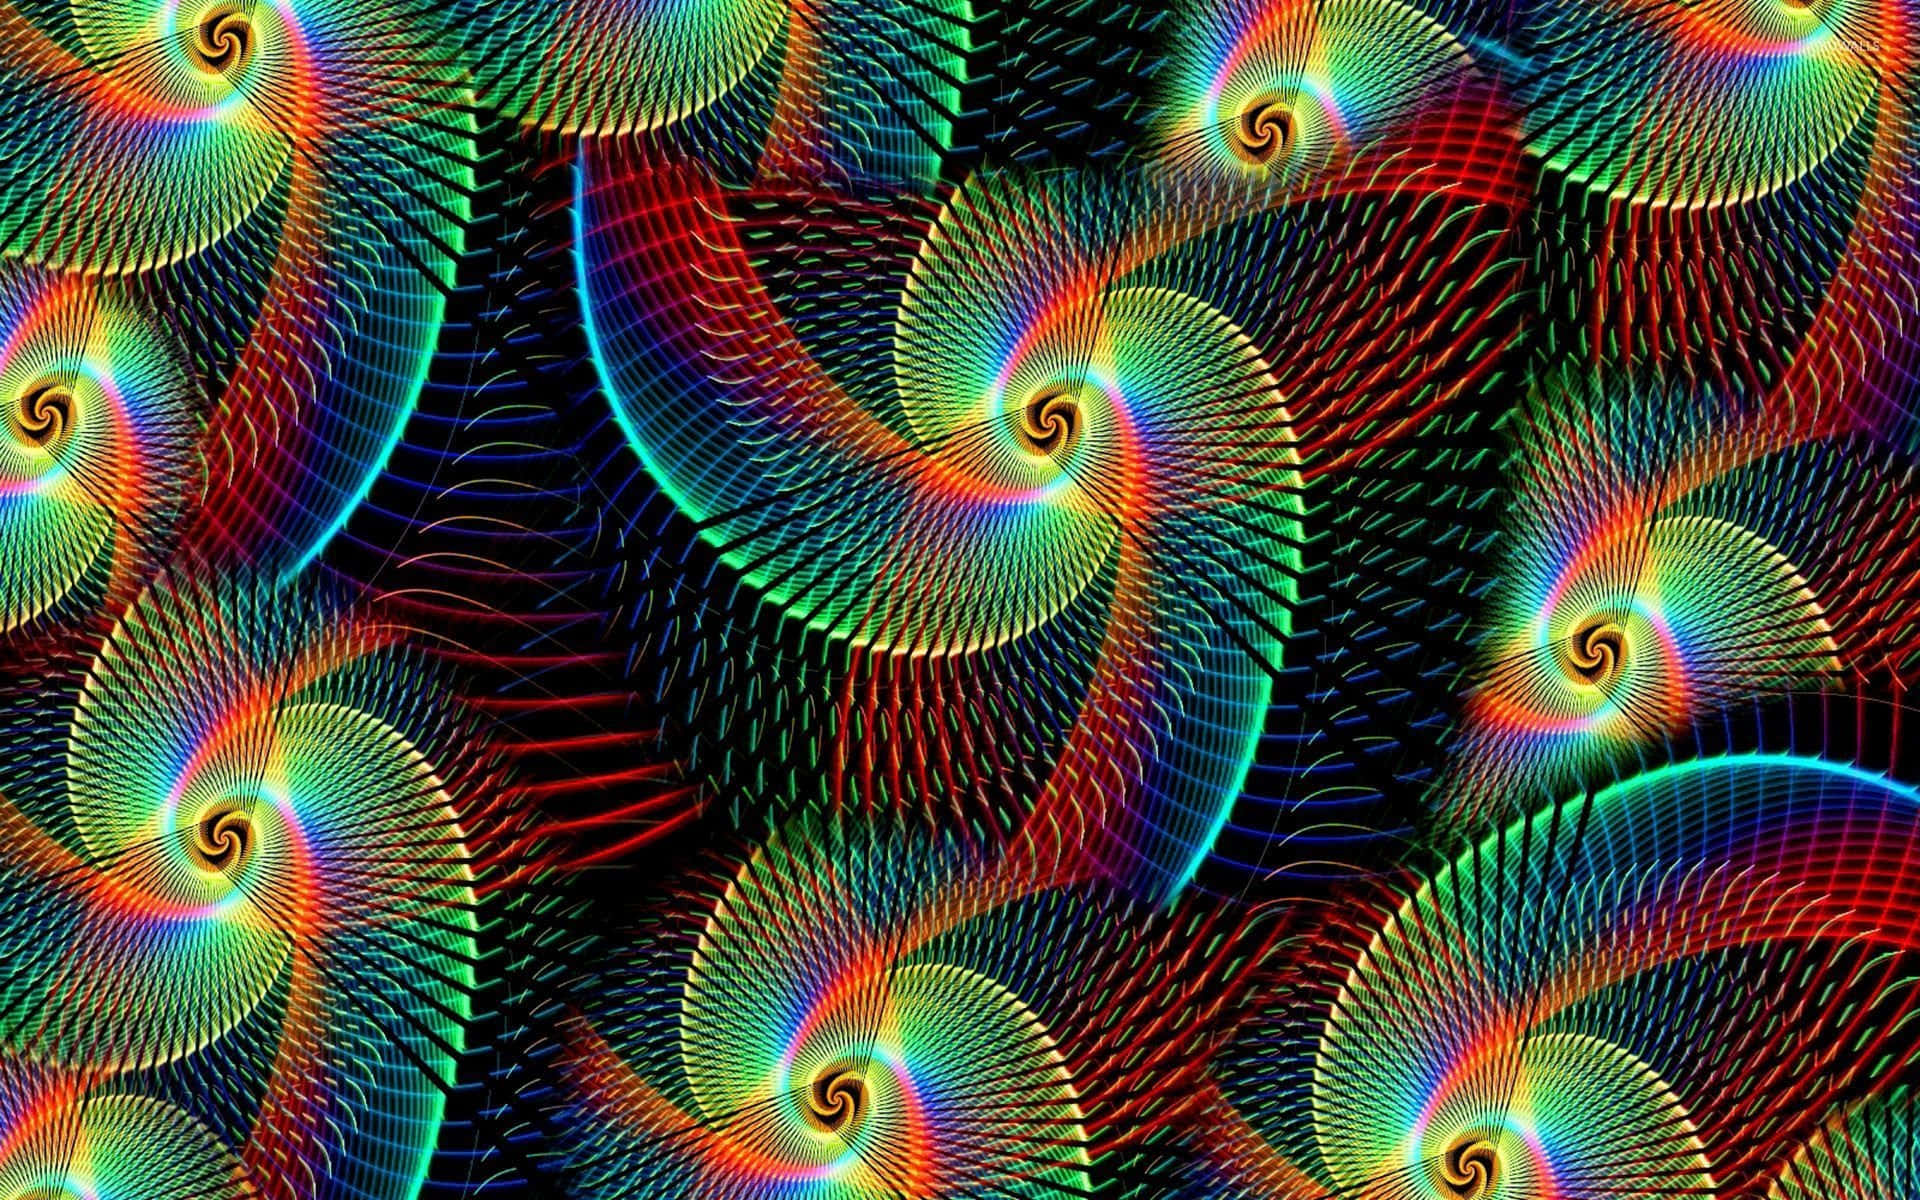 “En glitrende Swirl af Farver” Wallpaper